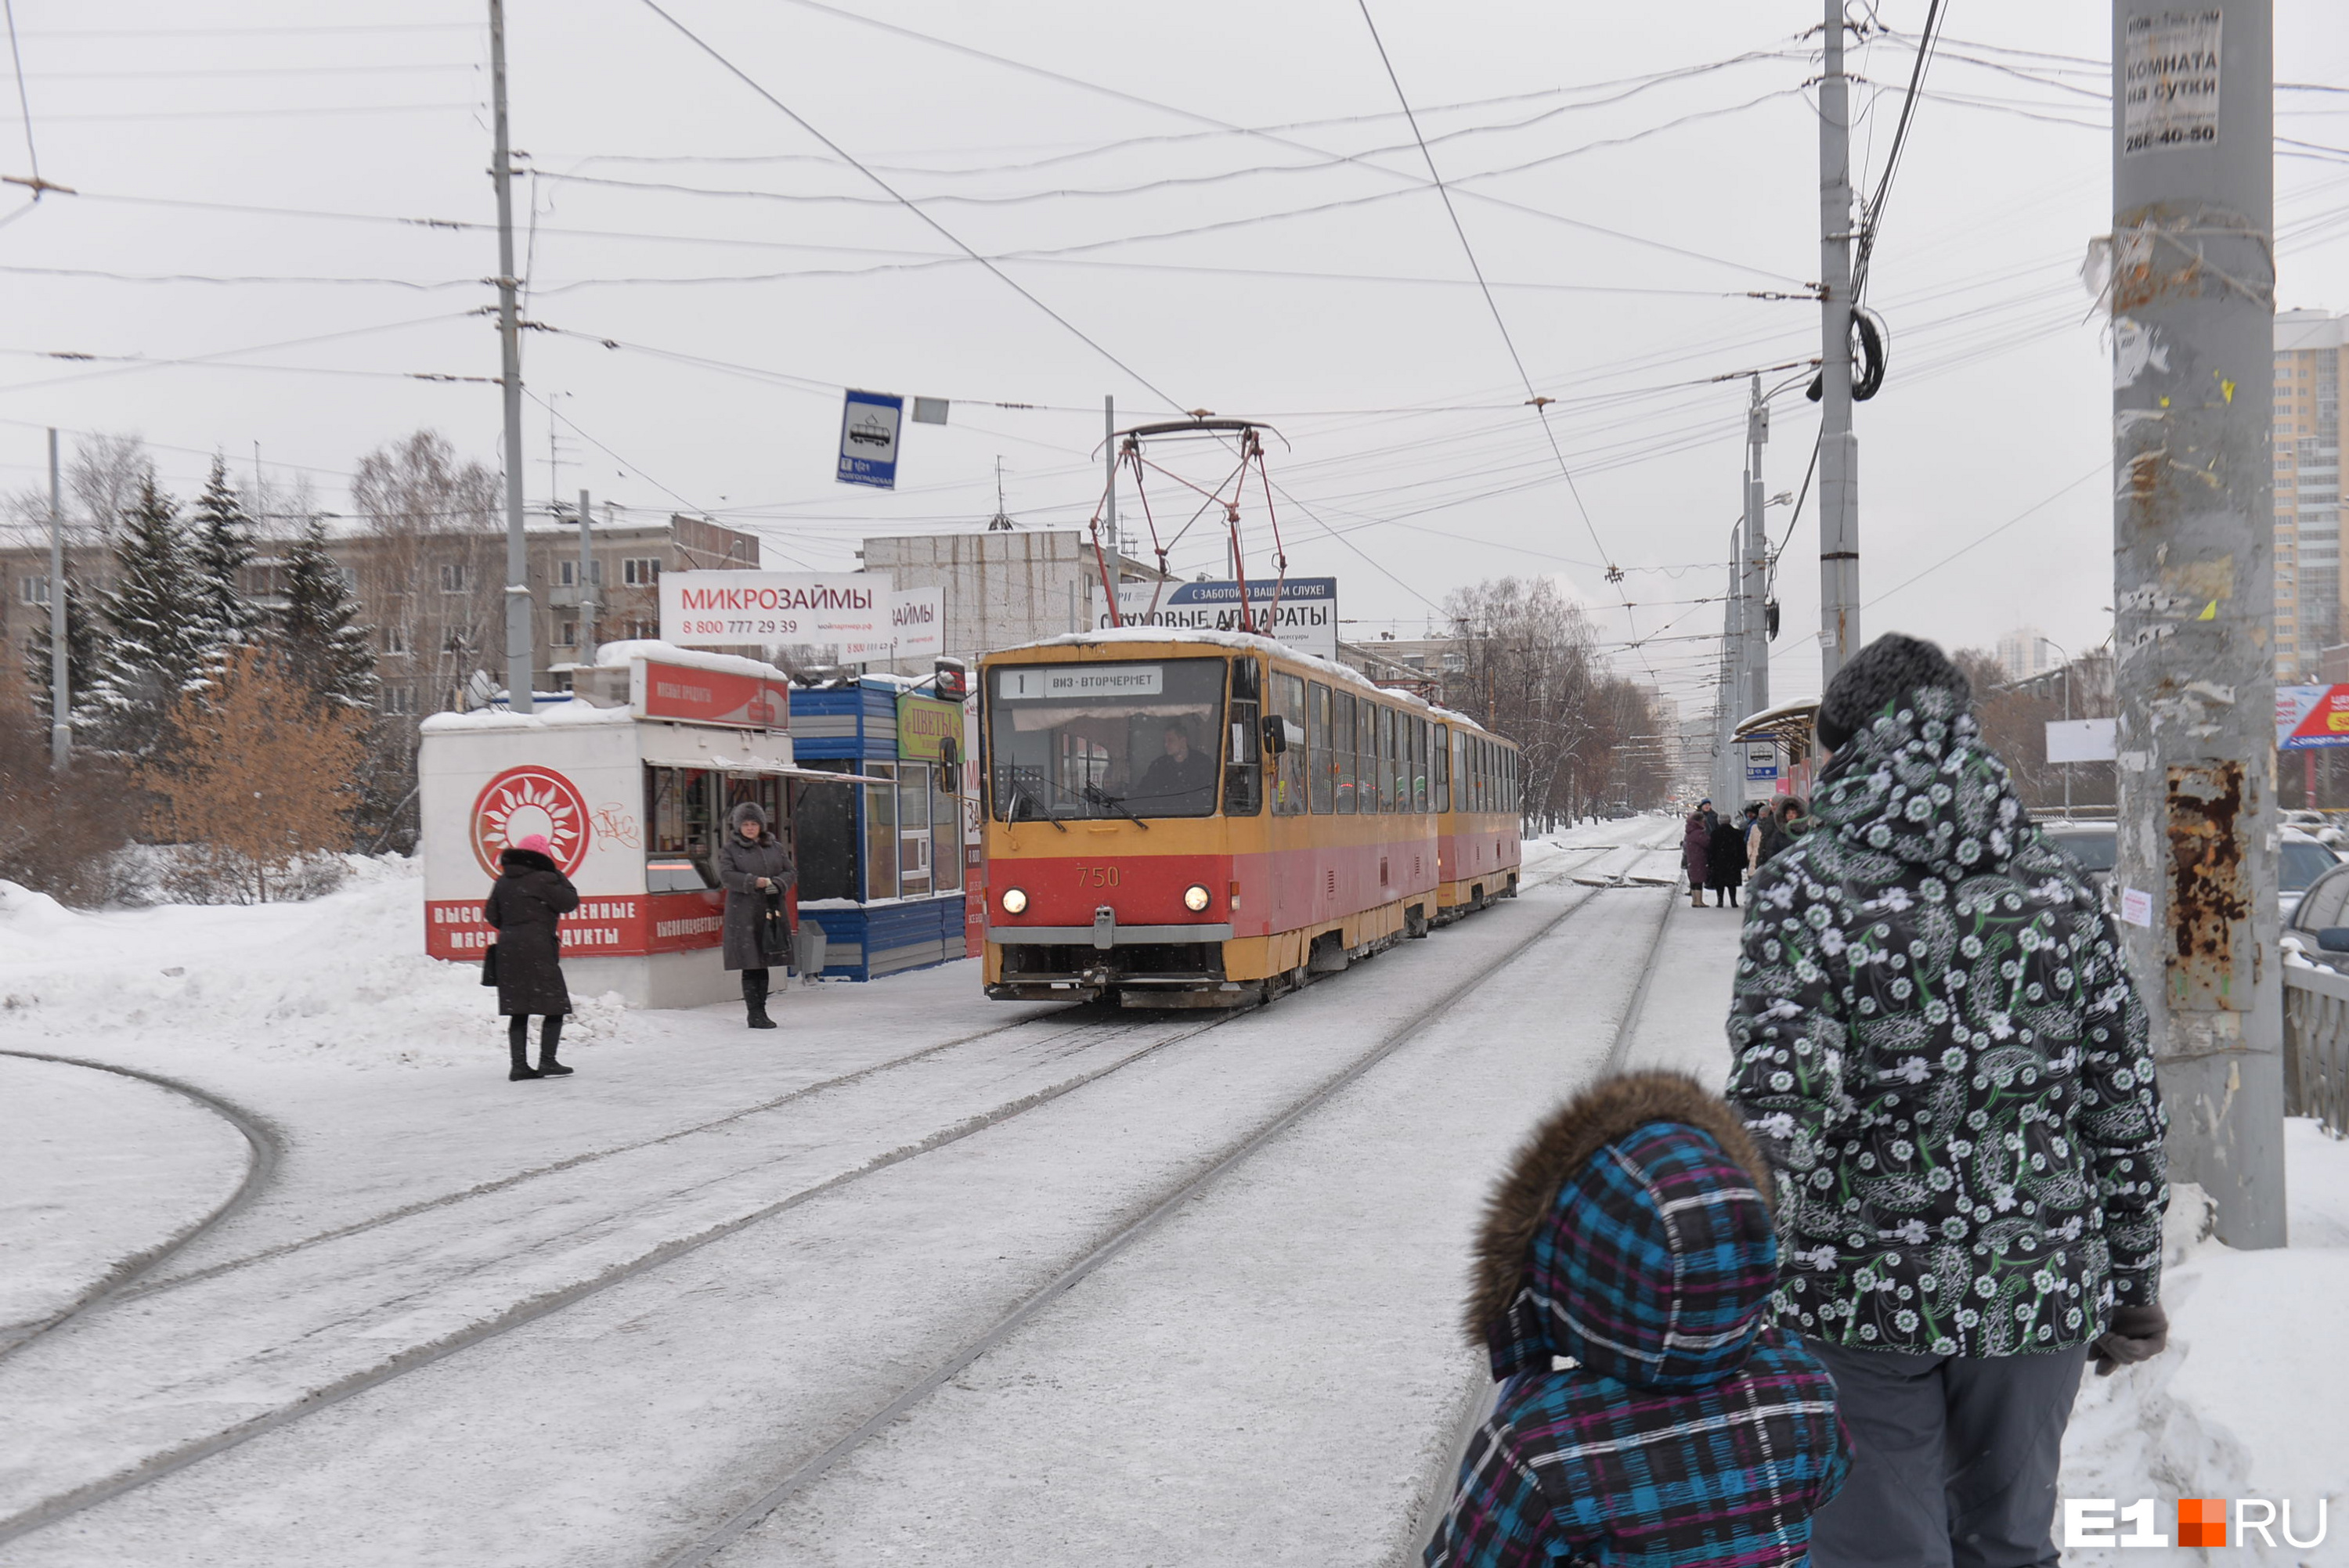 Мэрия Екатеринбурга построит большое трамвайное кольцо за счет бизнеса. Осталось найти желающих